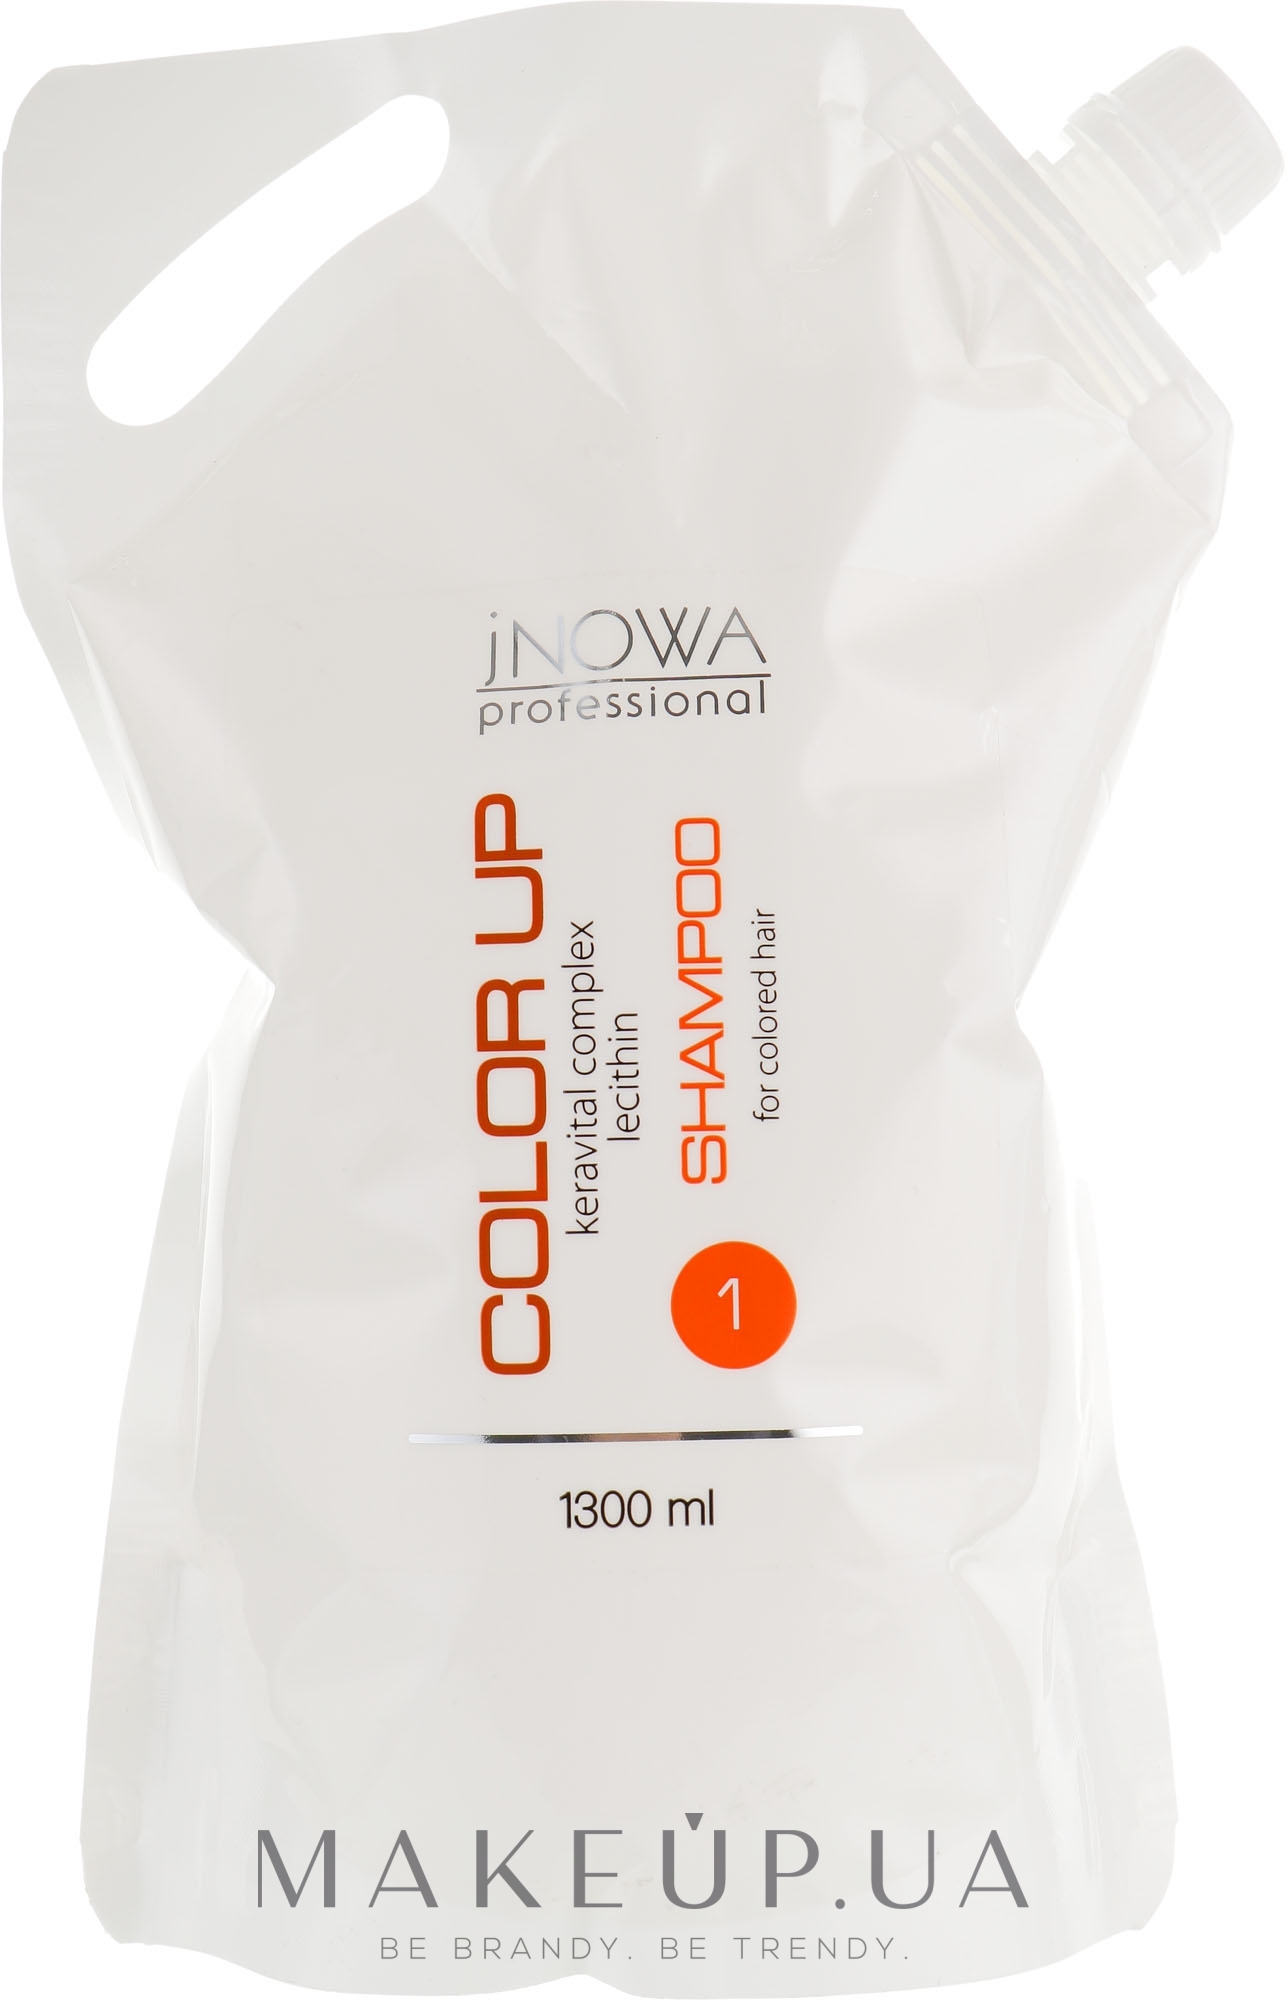 Шампунь профессиональный для стабилизации цвета после окрашивания - jNOWA Professional Color Up Hair Shampoo (запасной блок) — фото 1300ml